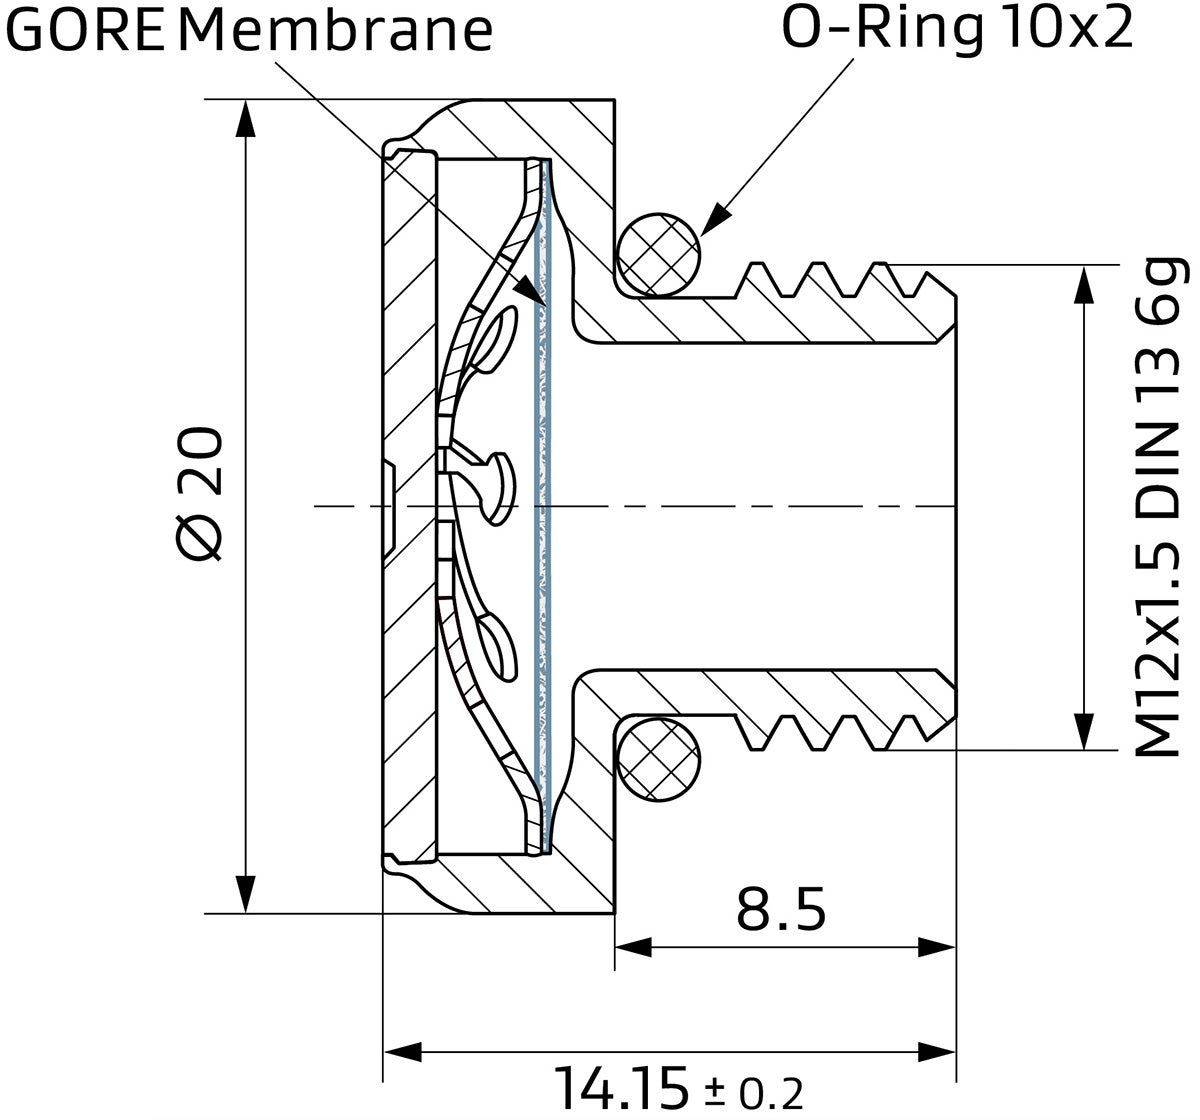 Diseño y dimensiones del elemento de ventilación GORE® PolyVent Ex+